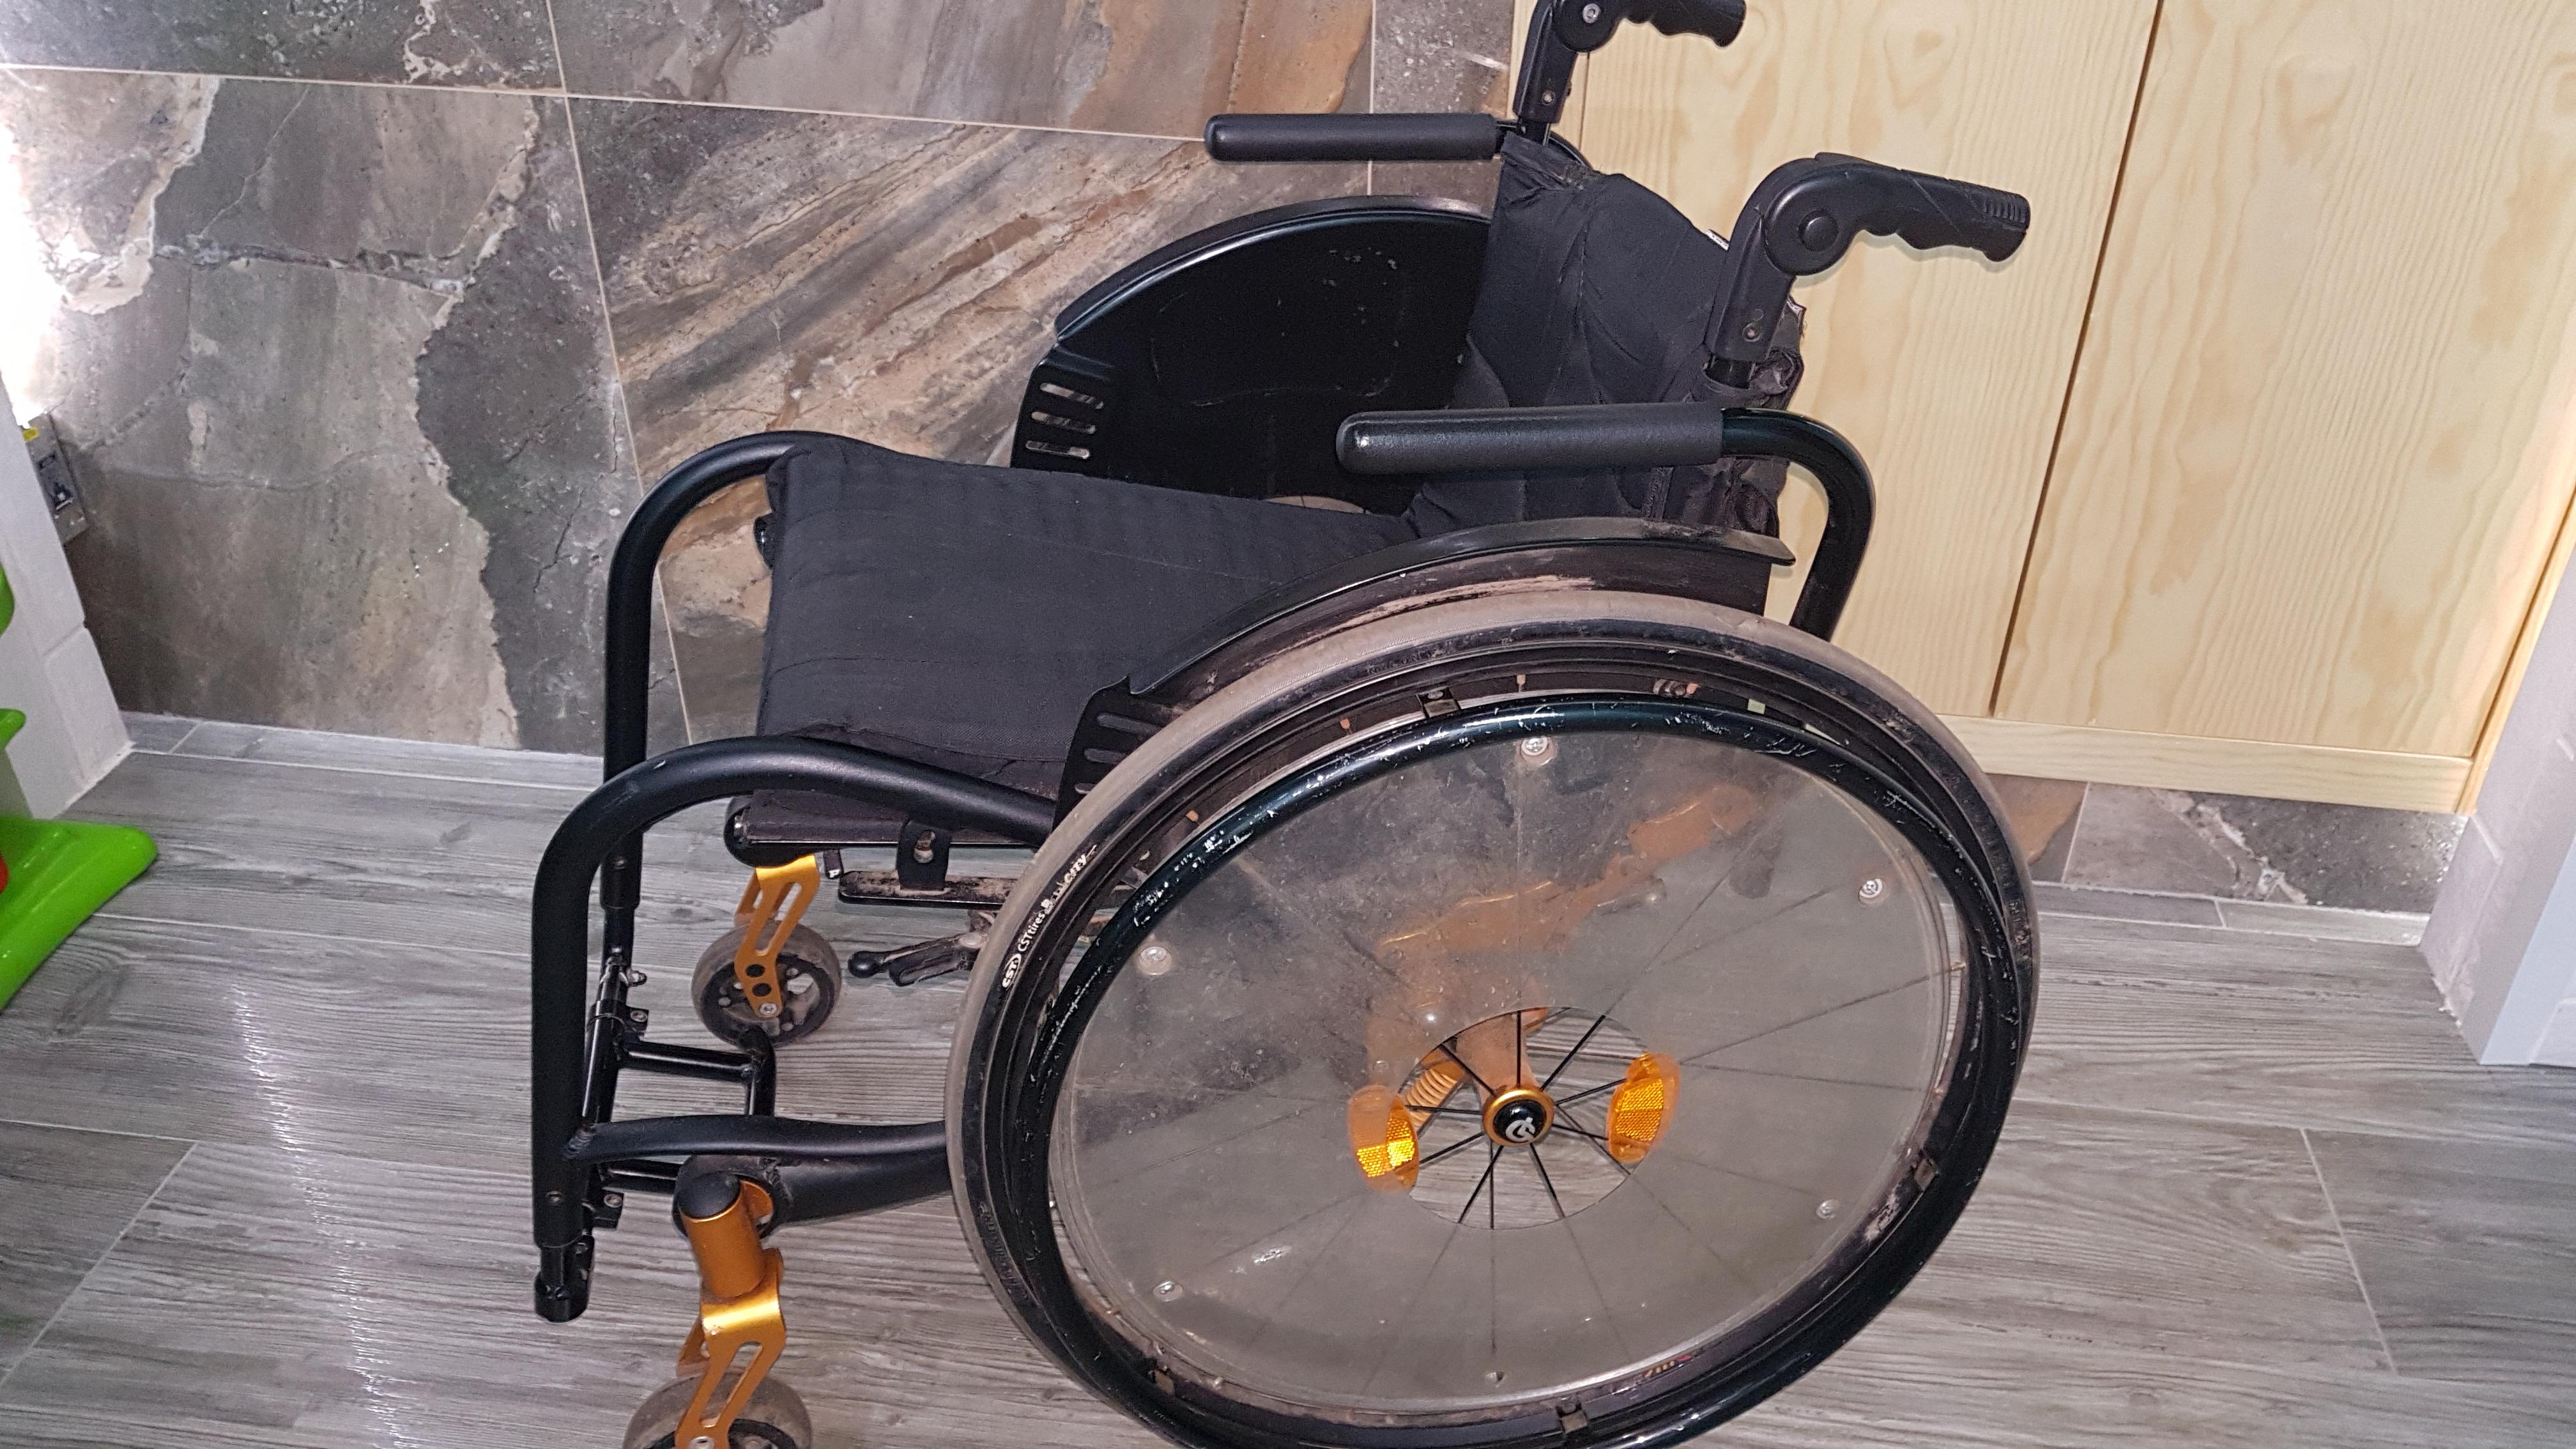 Ортоника s3000 инвалидная коляска